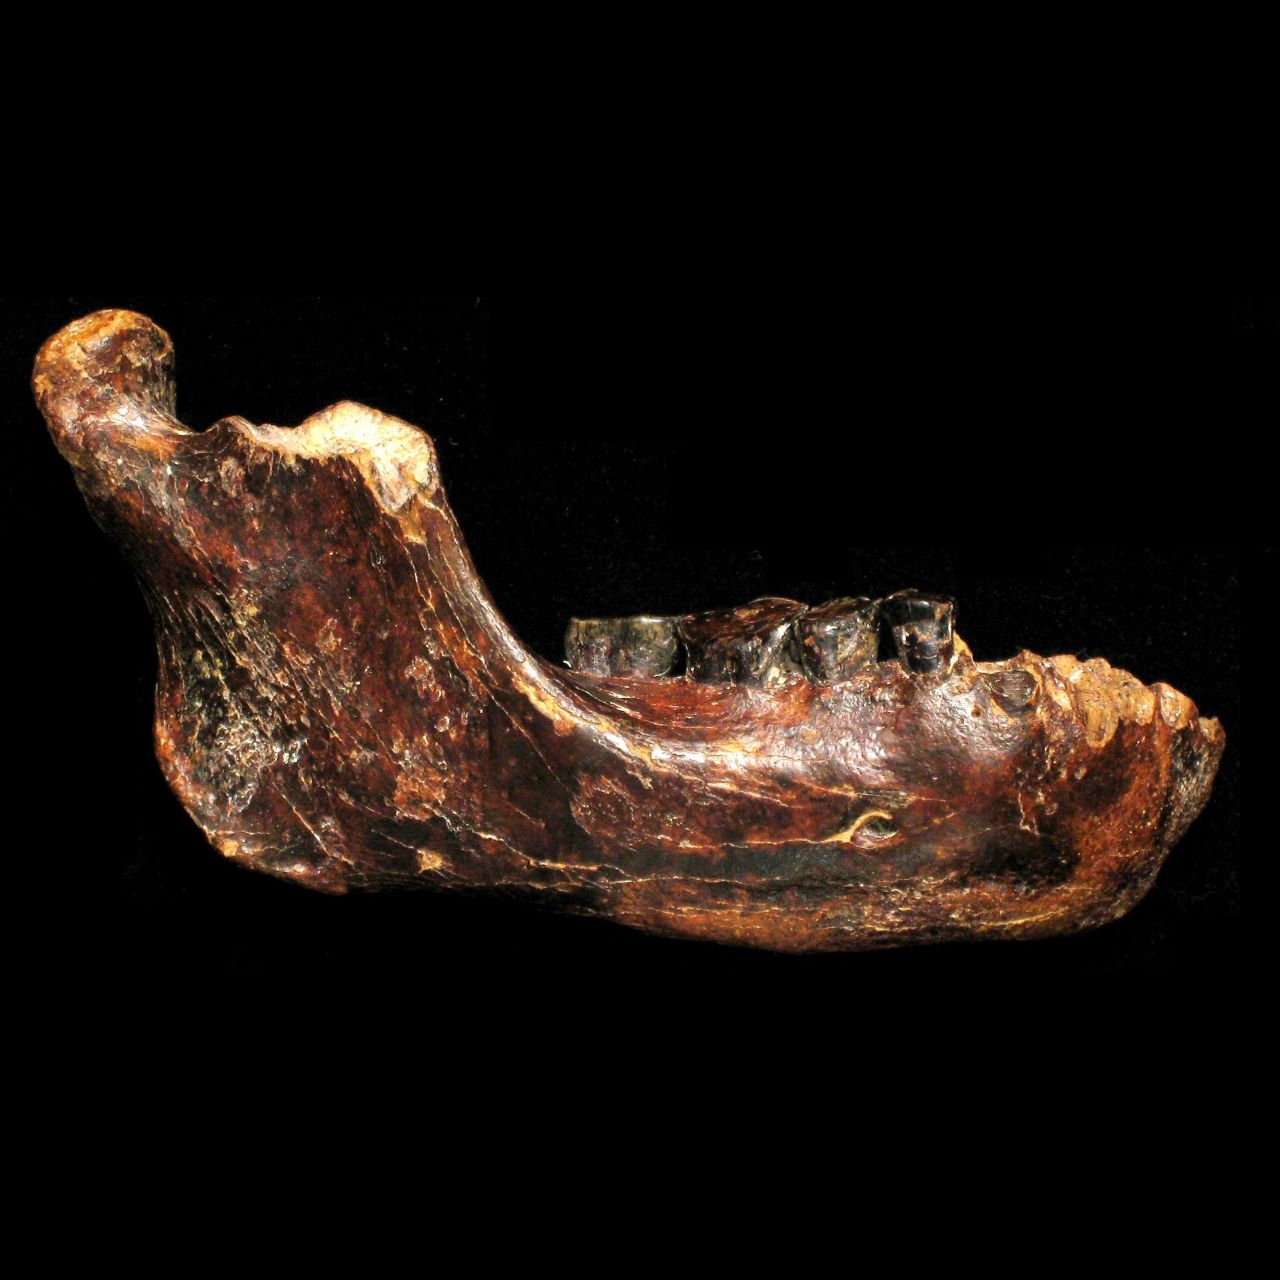 El descubrimiento podría tener 200.000 años de antigüedad y sugiere que existió un cuarto tipo de humano prehistórico que vivió en Asia antes de que el Homo sapiens existiera.